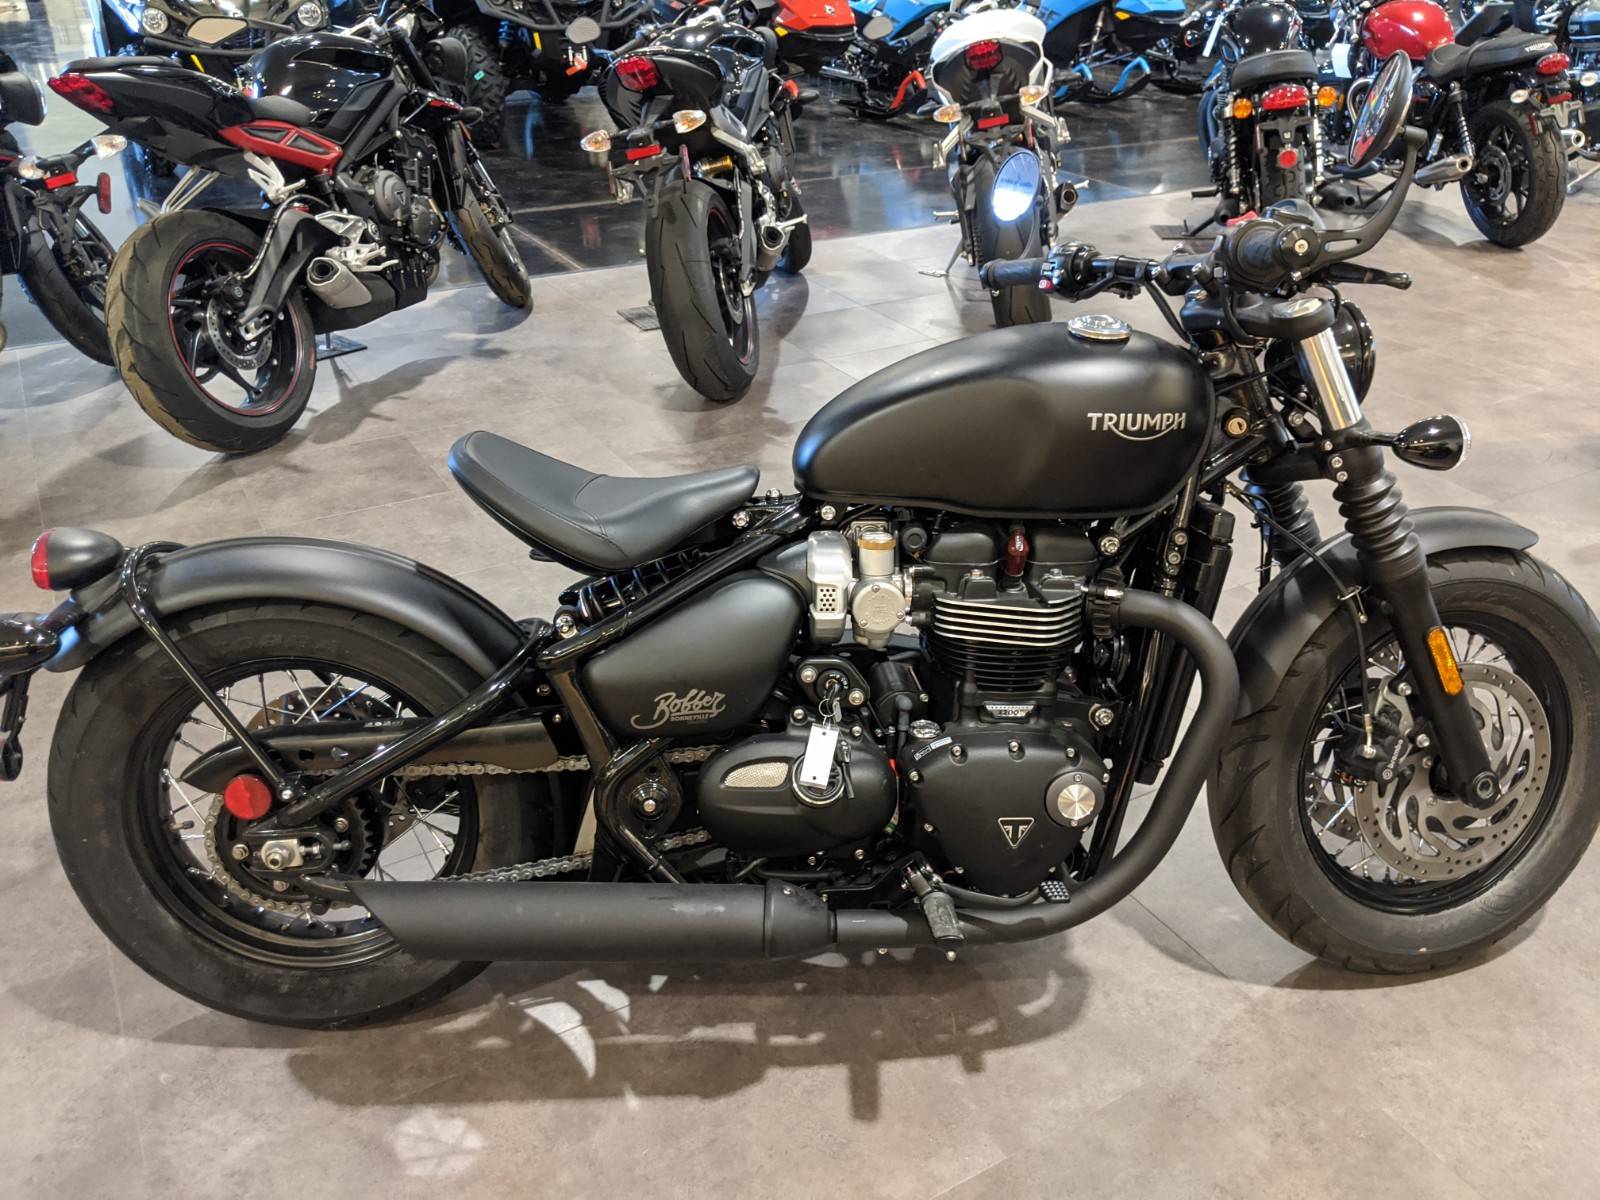 New 2019 Triumph Bonneville Bobber Black Matte Black Motorcycles In Rapid City Sd 3075